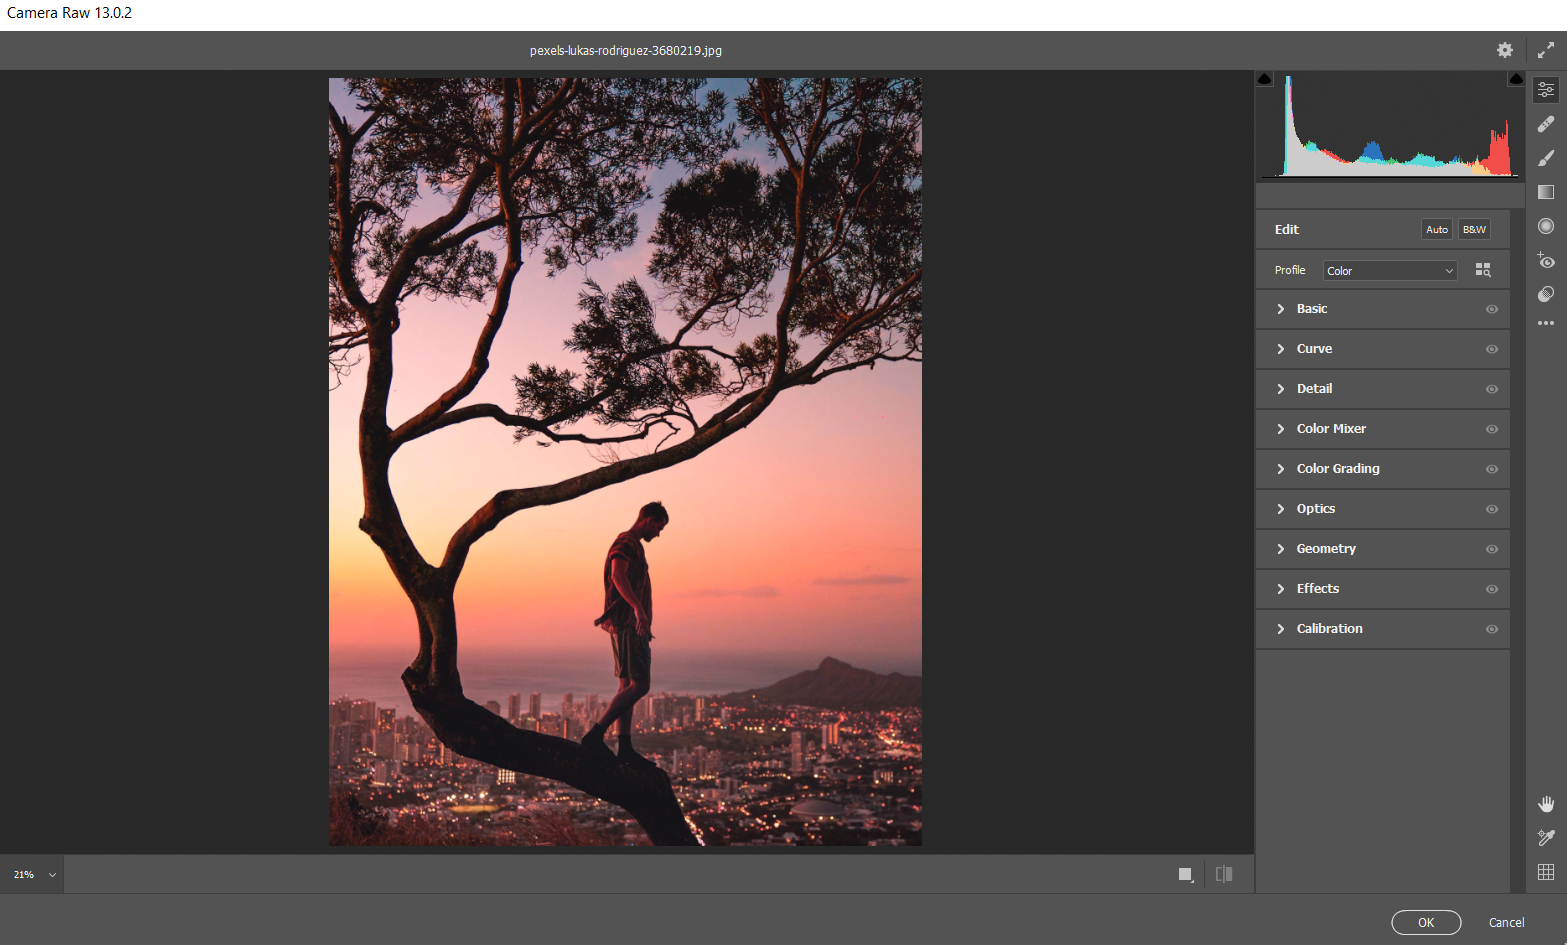 camera raw opened - Come utilizzare Adobe Camera Raw come oggetto avanzato in Photoshop